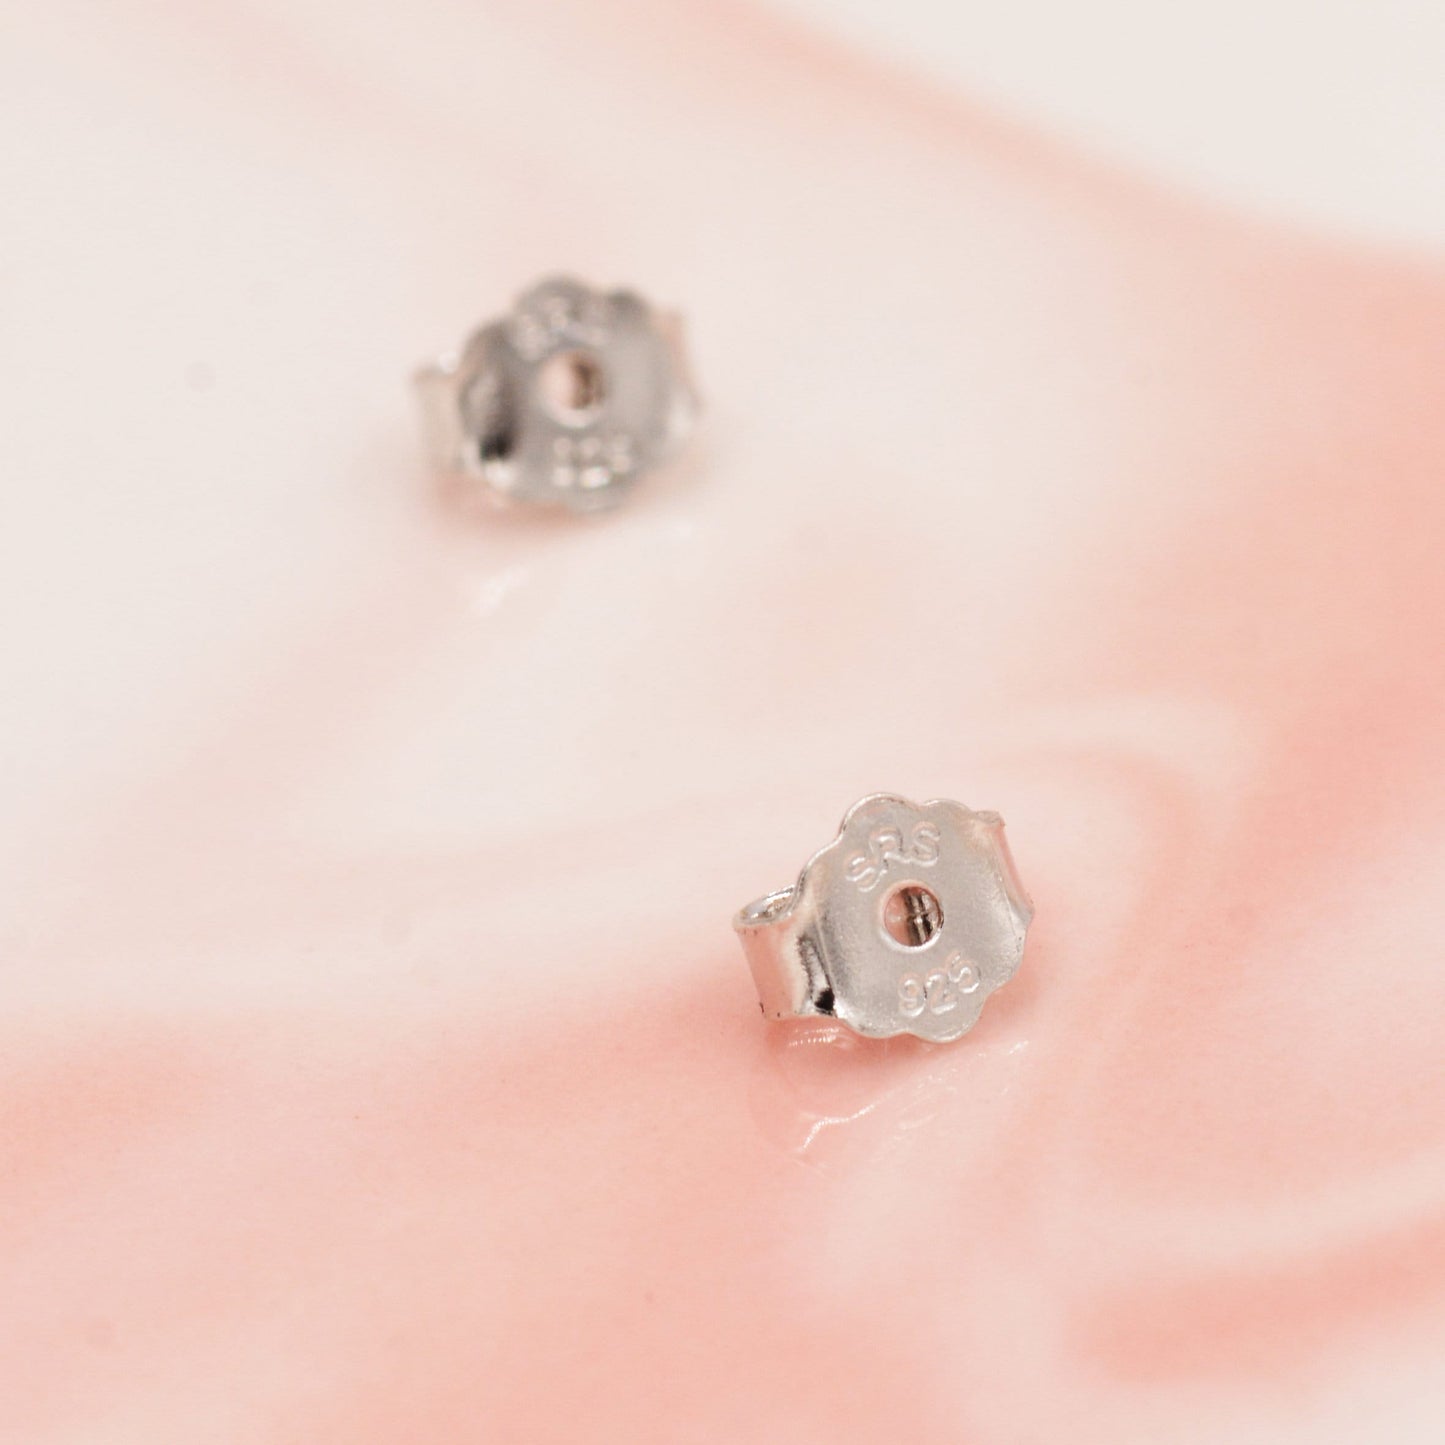 Extra Tiny Cosmic Blue Opal Heart Stud Earrings in Sterling Silver - 3mm Fire Opal - Sustainable Lab Opal - Petite Stud Earrings